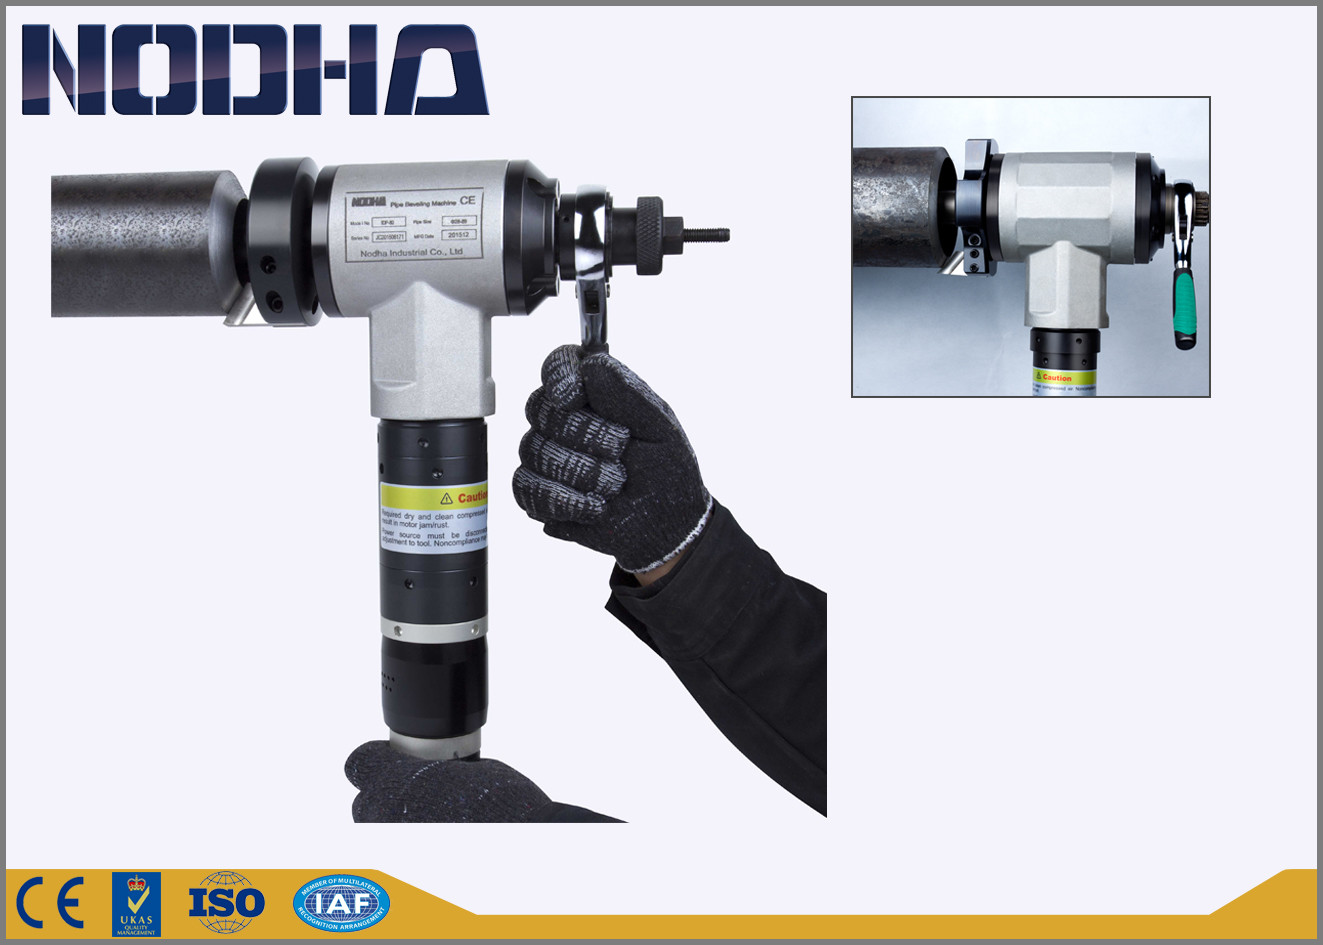 Le coupeur de tuyau pneumatique de NODHA, sifflent l'opération facile de découpeuse froide